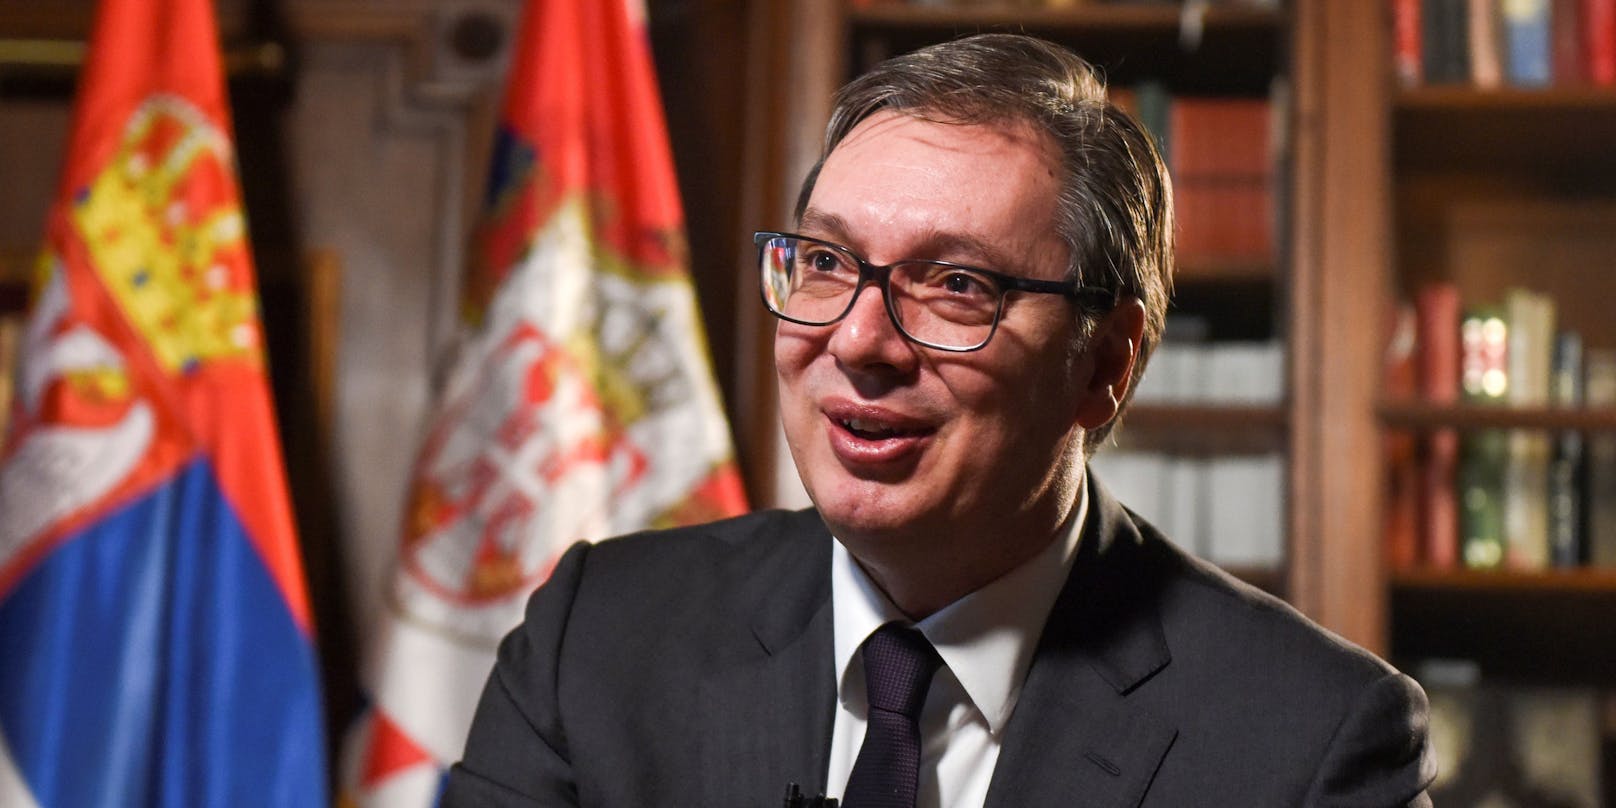 "Wir haben beschlossen, geimpften Personen zusätzliche finanzielle Unterstützung zukommen zu lassen", so Vučić.